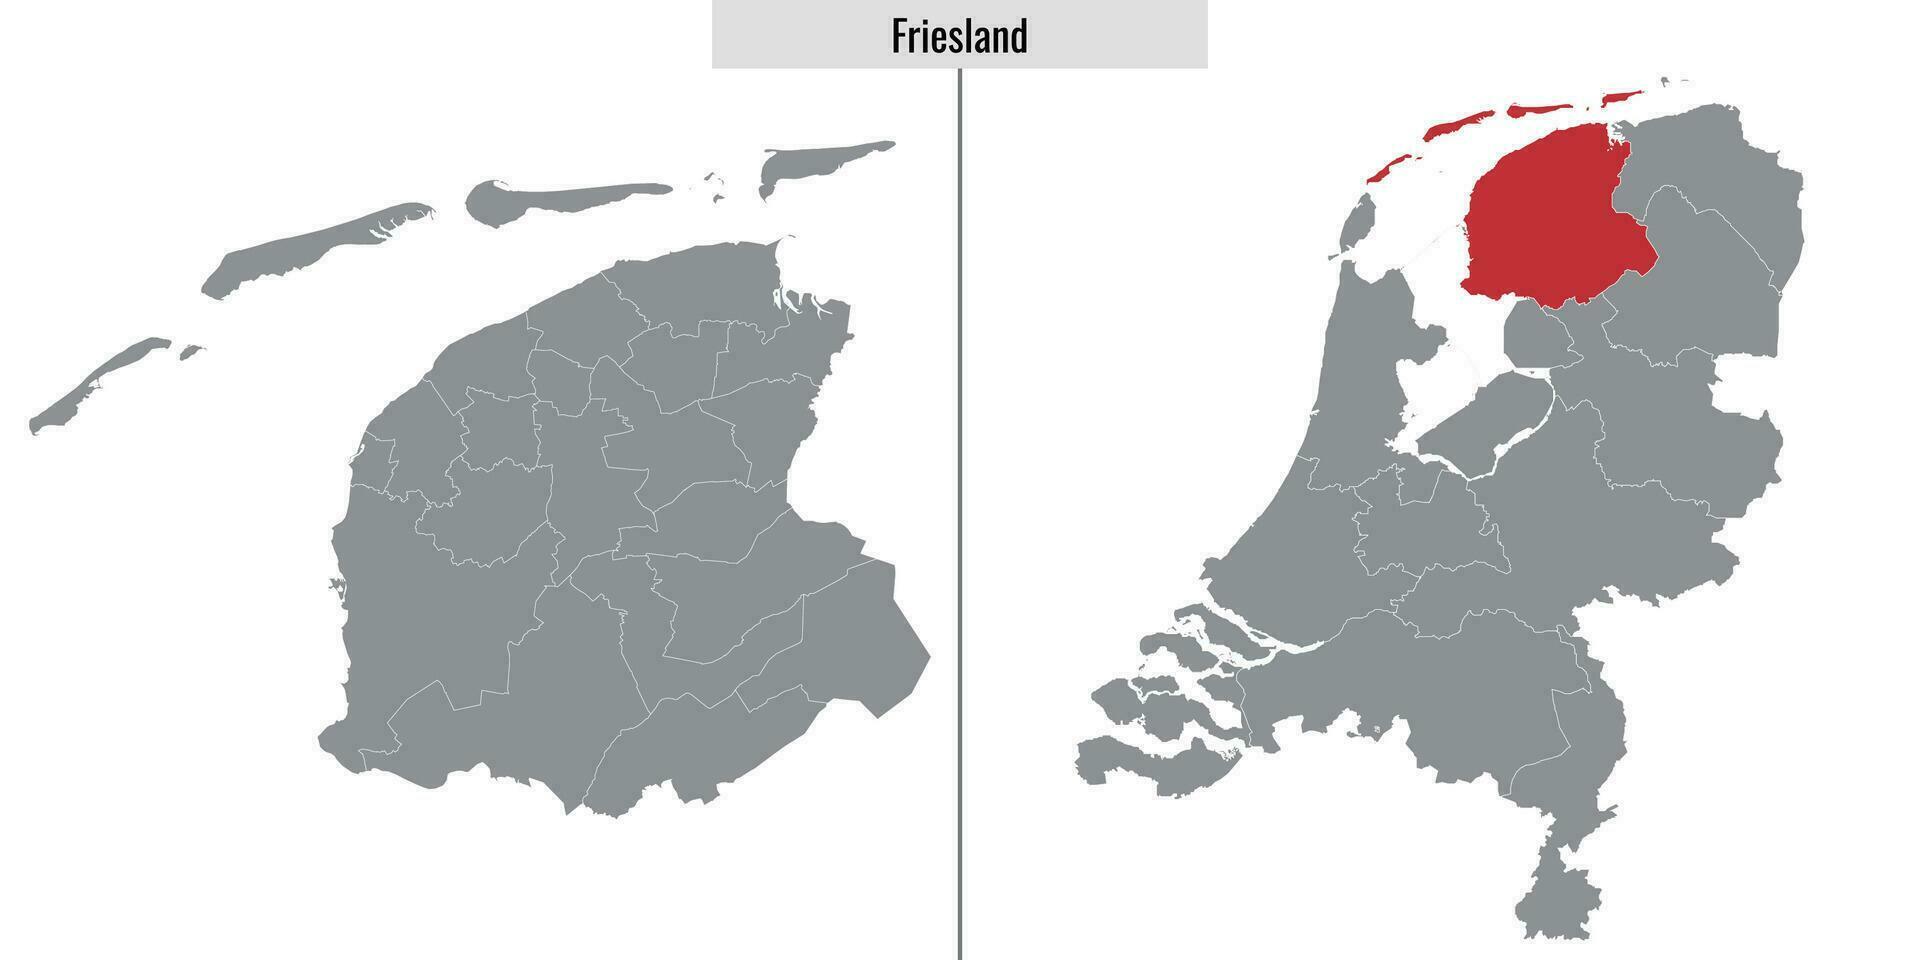 map region of Netherlands vector